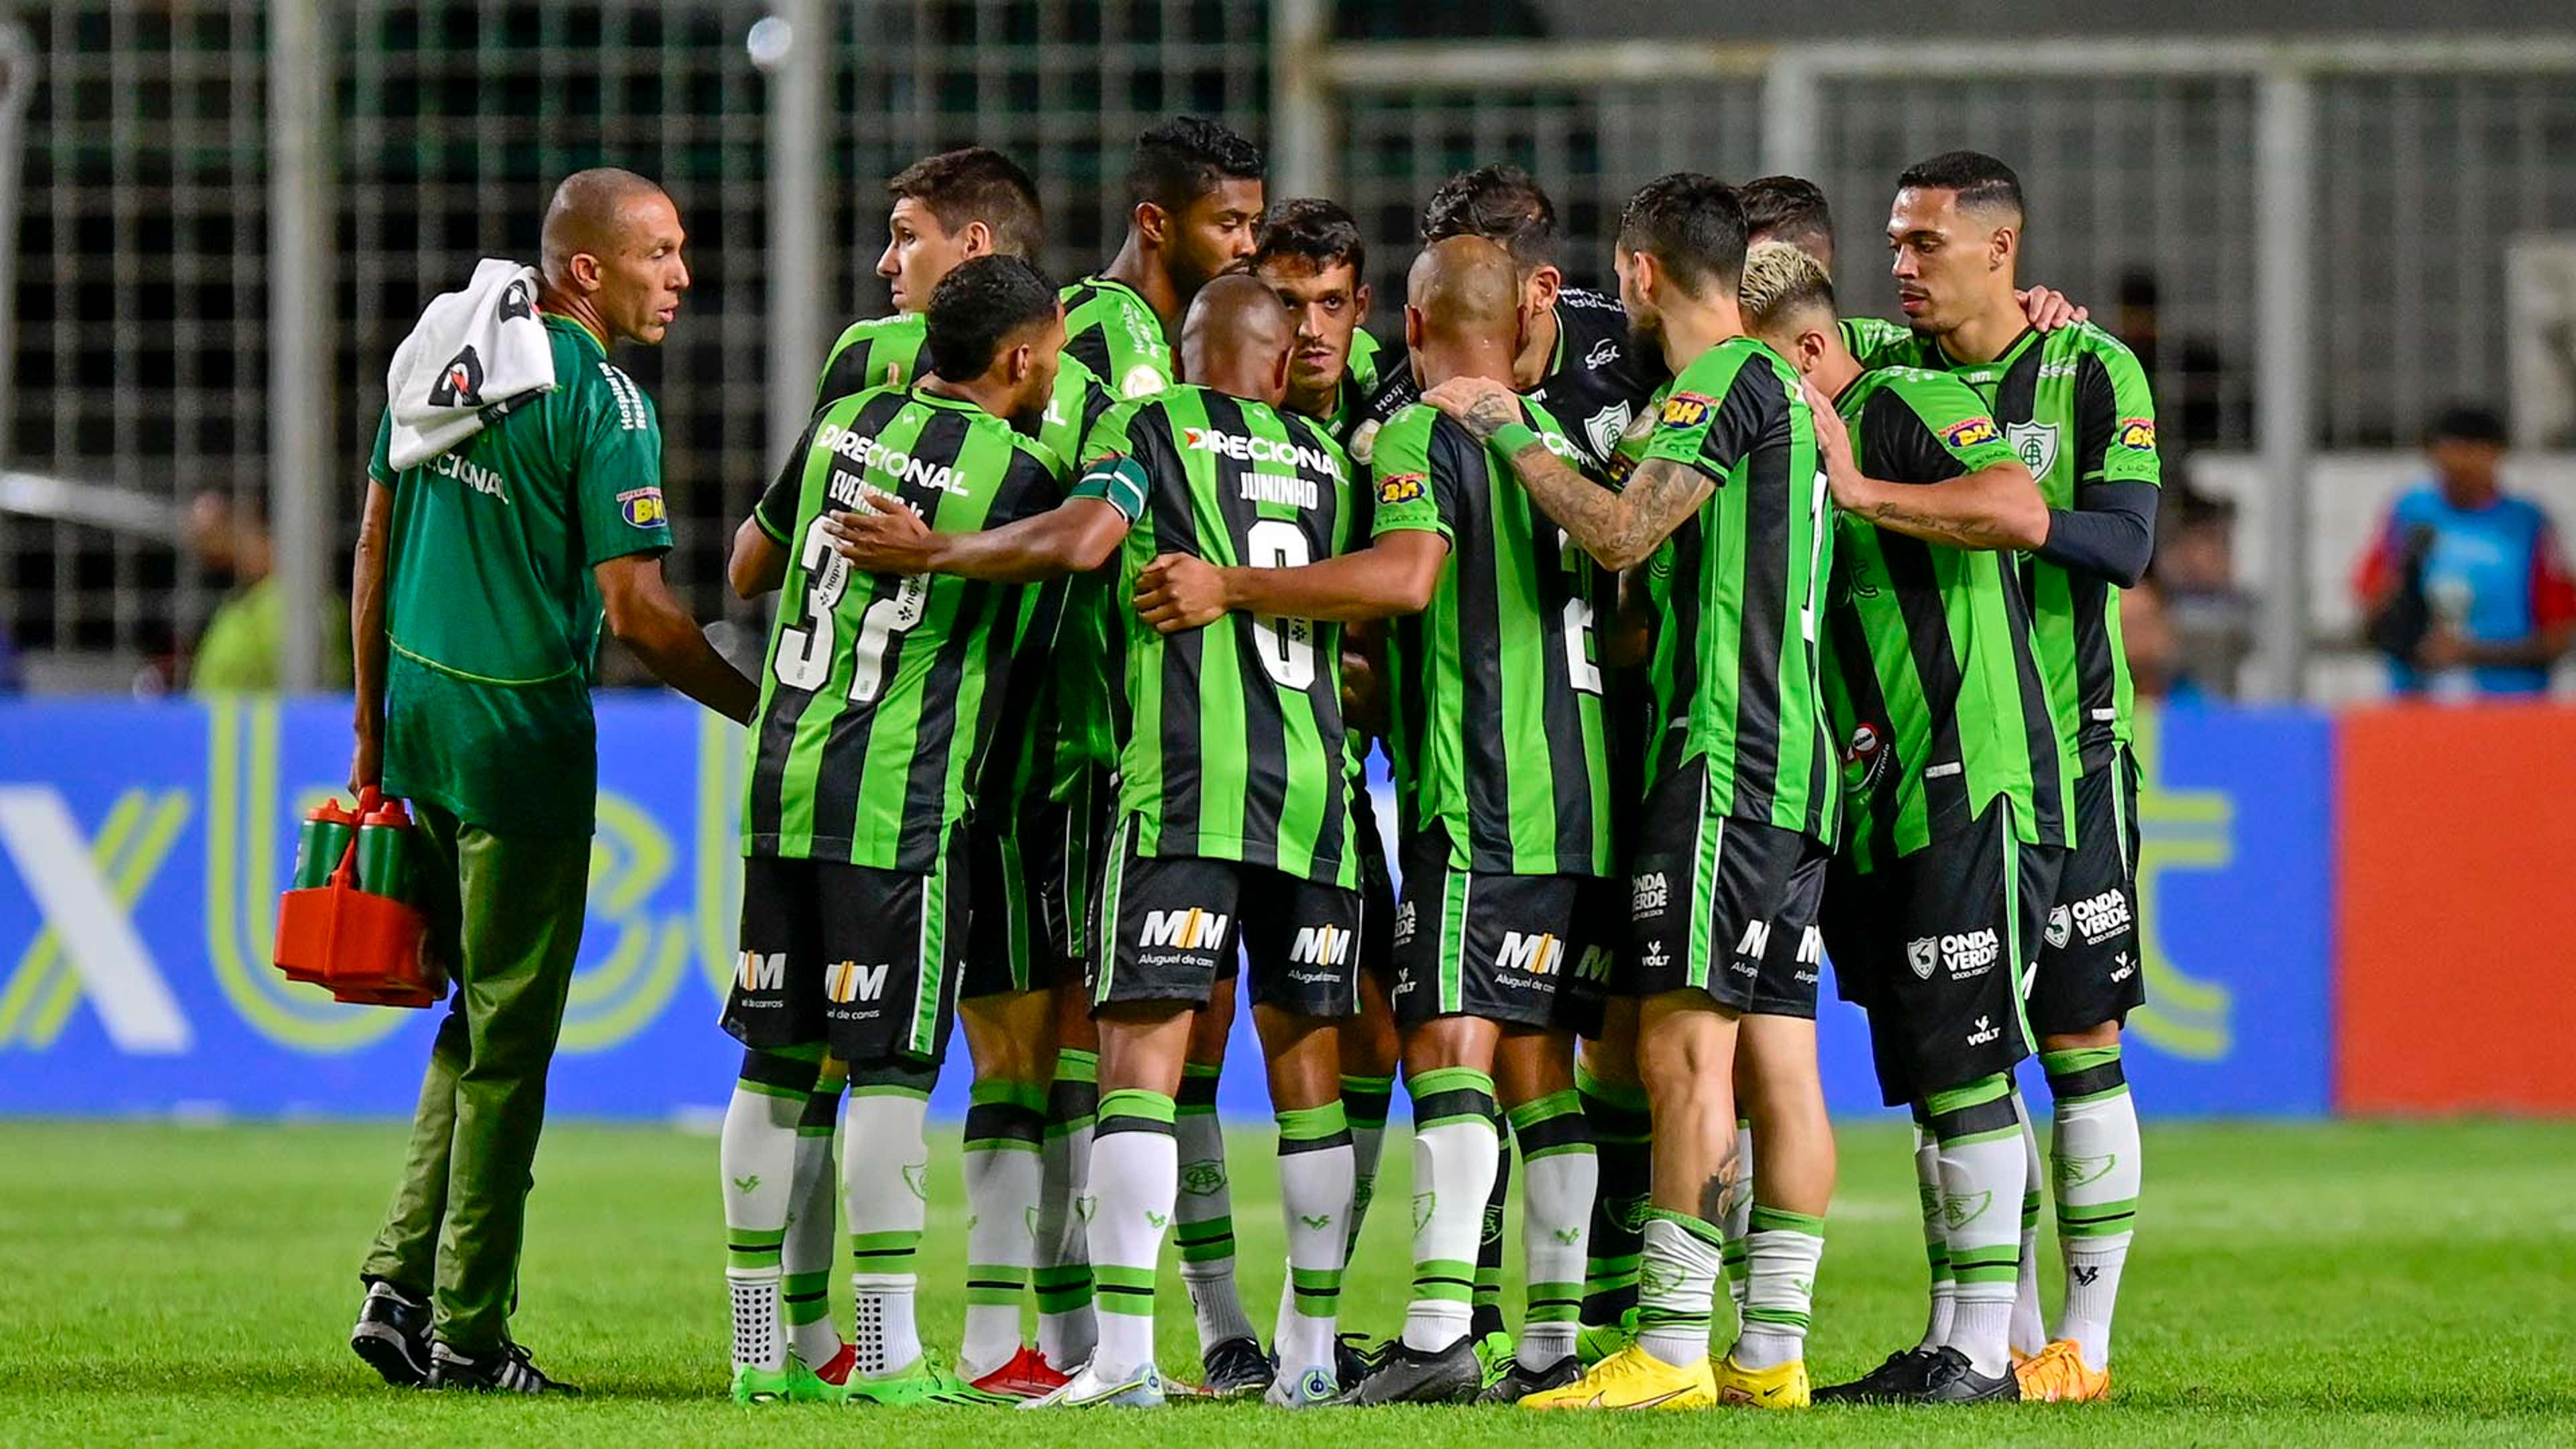 Tombense vs Atlético-GO: A Clash of Titans in Brazilian Football